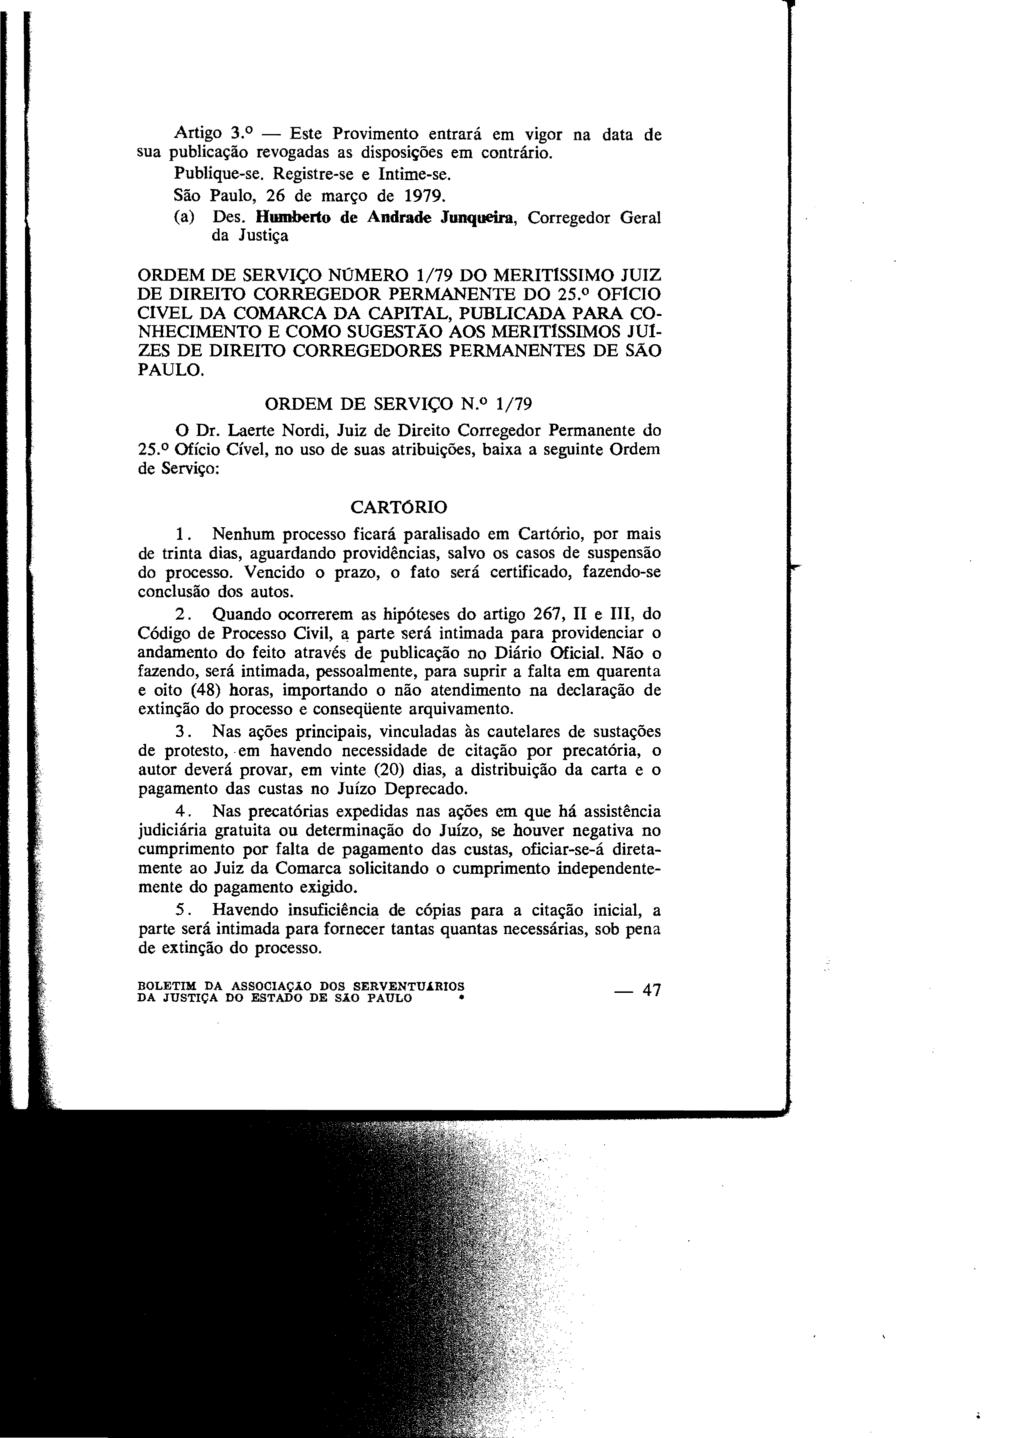 Artigo 3. 0 - Este Provimento entrará em vigor na data de sua publicação revogadas as disposições em contrário. Publique-se. Registre-se e Intime-se. São Paulo, 26 de março de 1979. (a) Des.